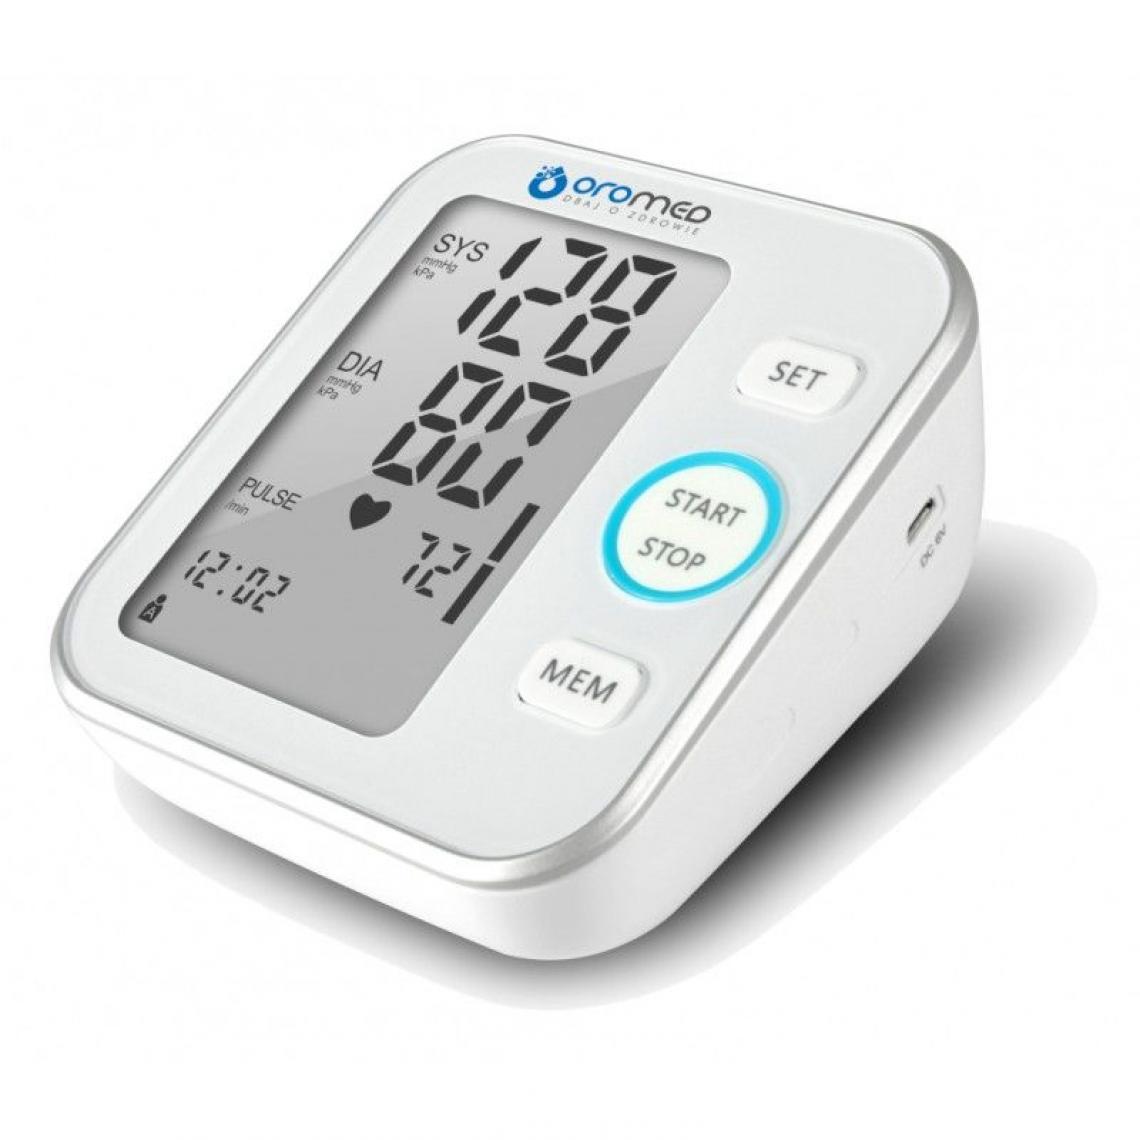 Inconnu - HI-TECH MEDICAL ORO-N6 BASIC tensiomètre (pression artérielle) Bras supérieur Automatique - Tensiomètre connecté